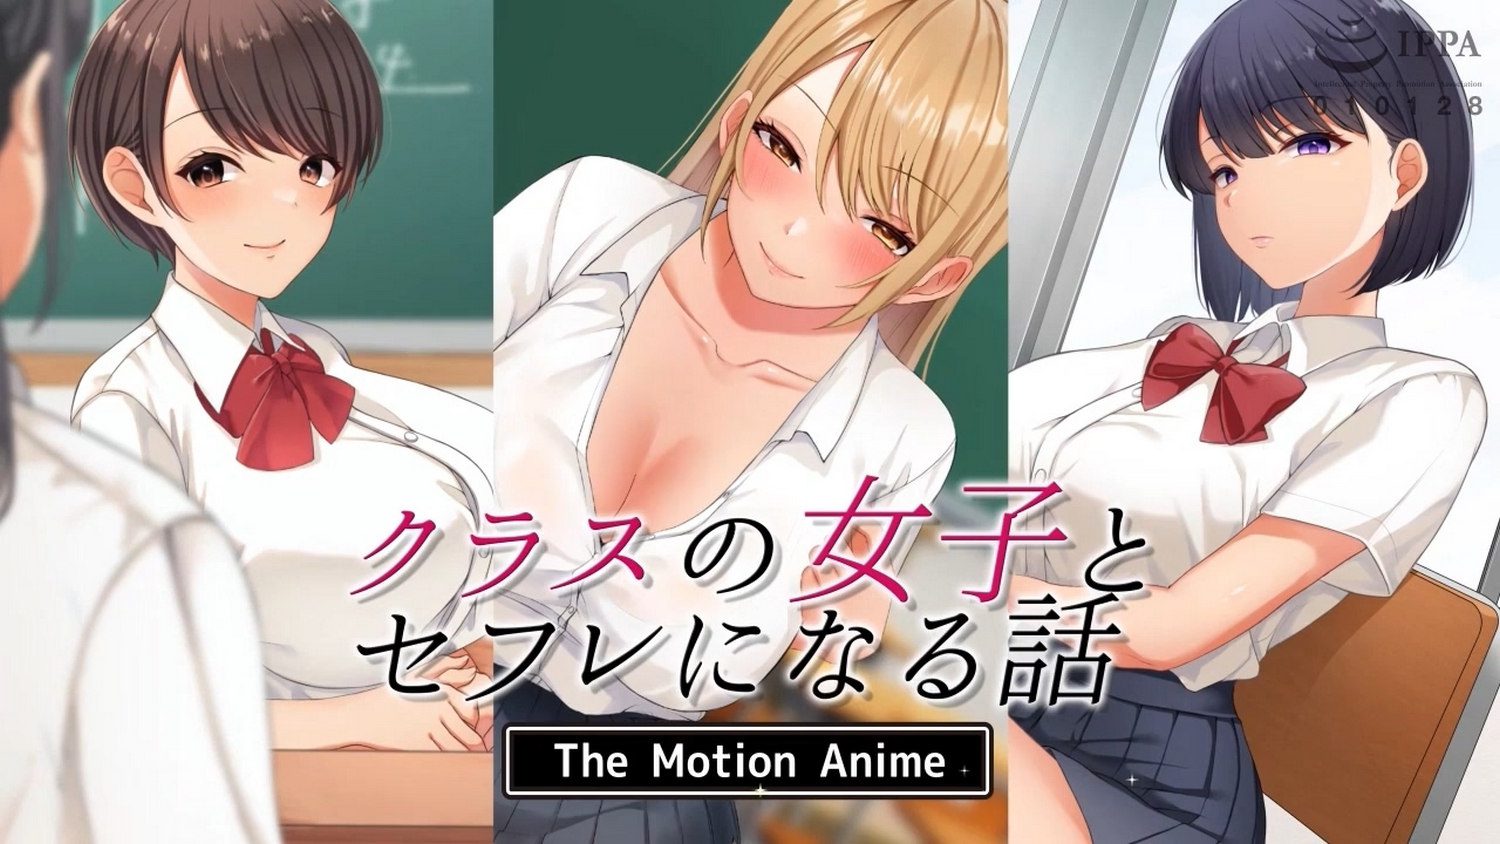 【survive more作者】クラスの女子とセフレになる話 The Motion Anime【1G】